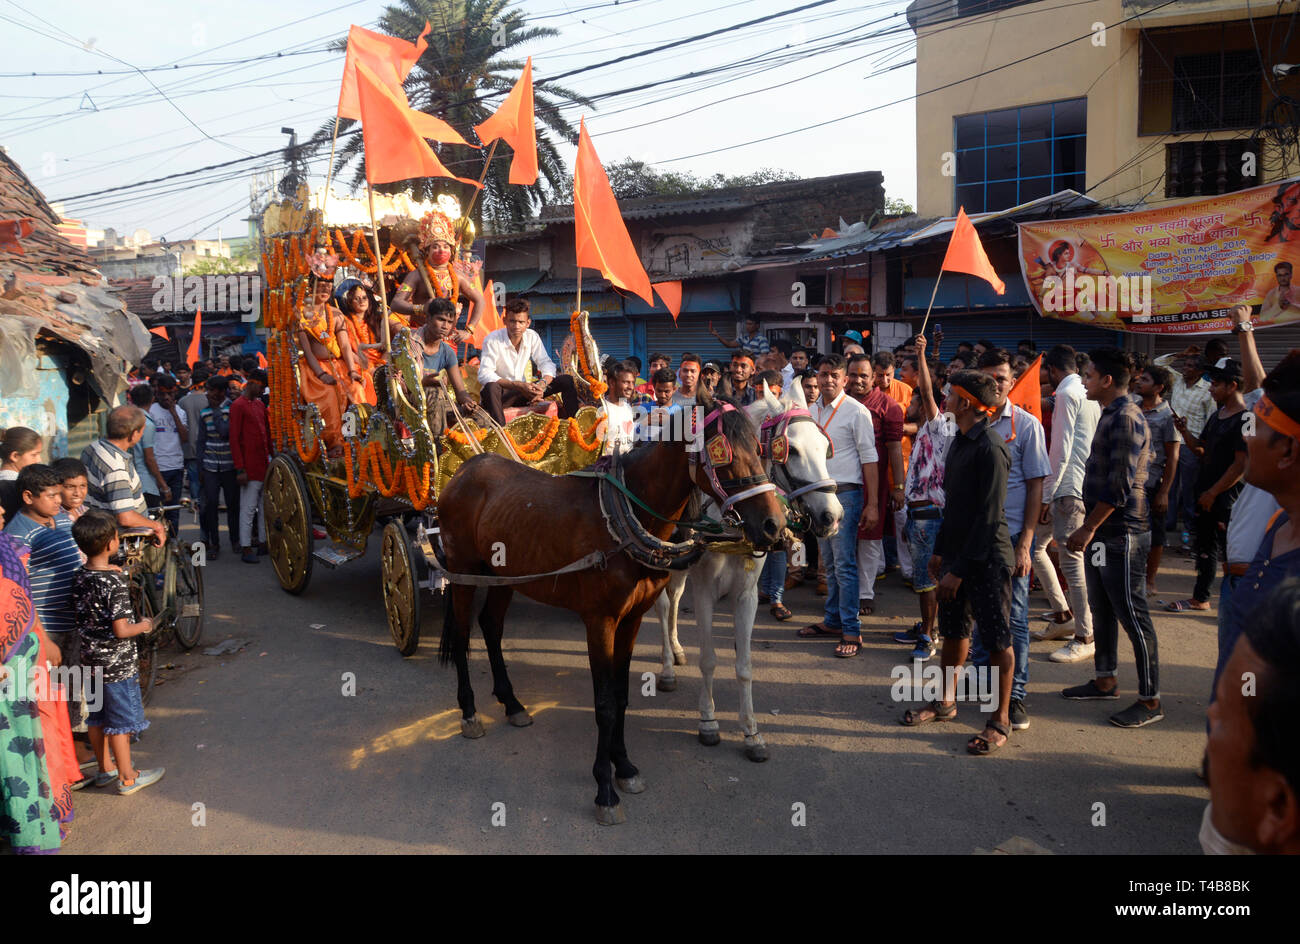 Kolkata, Inde. 14 avr, 2019. Hindous au Seigneur Ram, Laxman, Sita et Hanuman atours prendre part à la procession religieuse à l'occasion de Ram Navami Festival. Credit : Saikat Paul/Pacific Press/Alamy Live News Banque D'Images